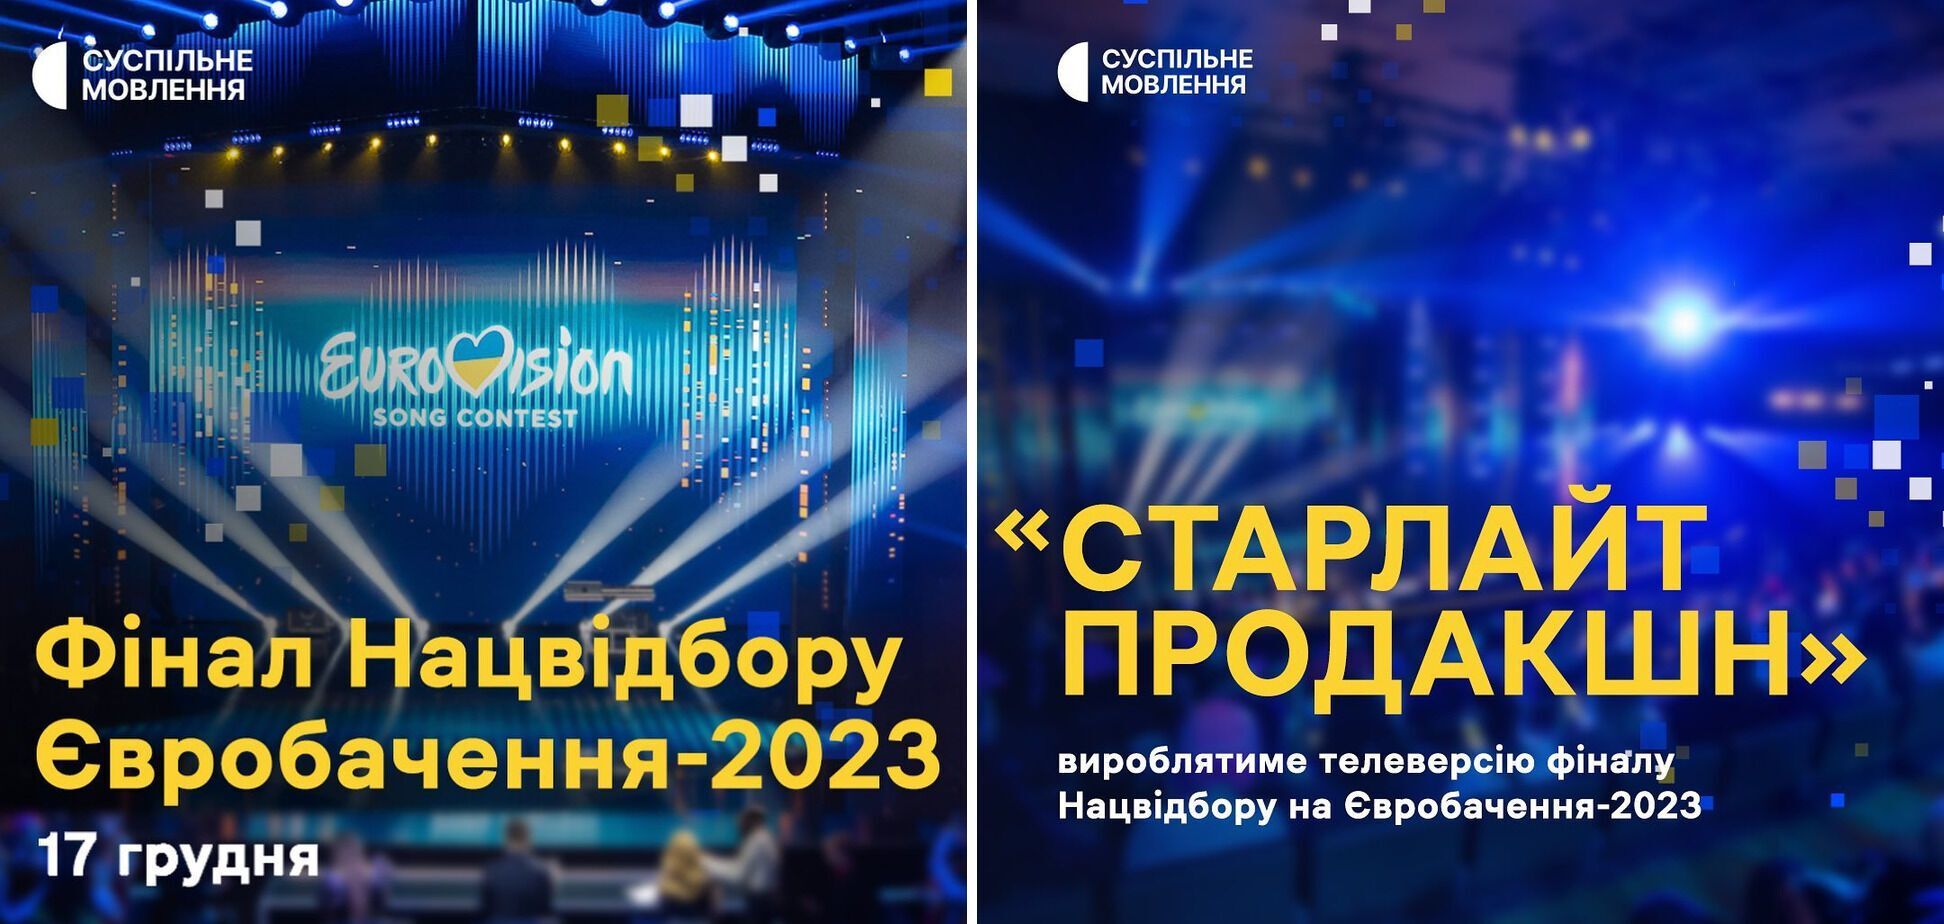 Організатори Нацвідбору на Євробачення-2023 оголосили дату проведення конкурсу